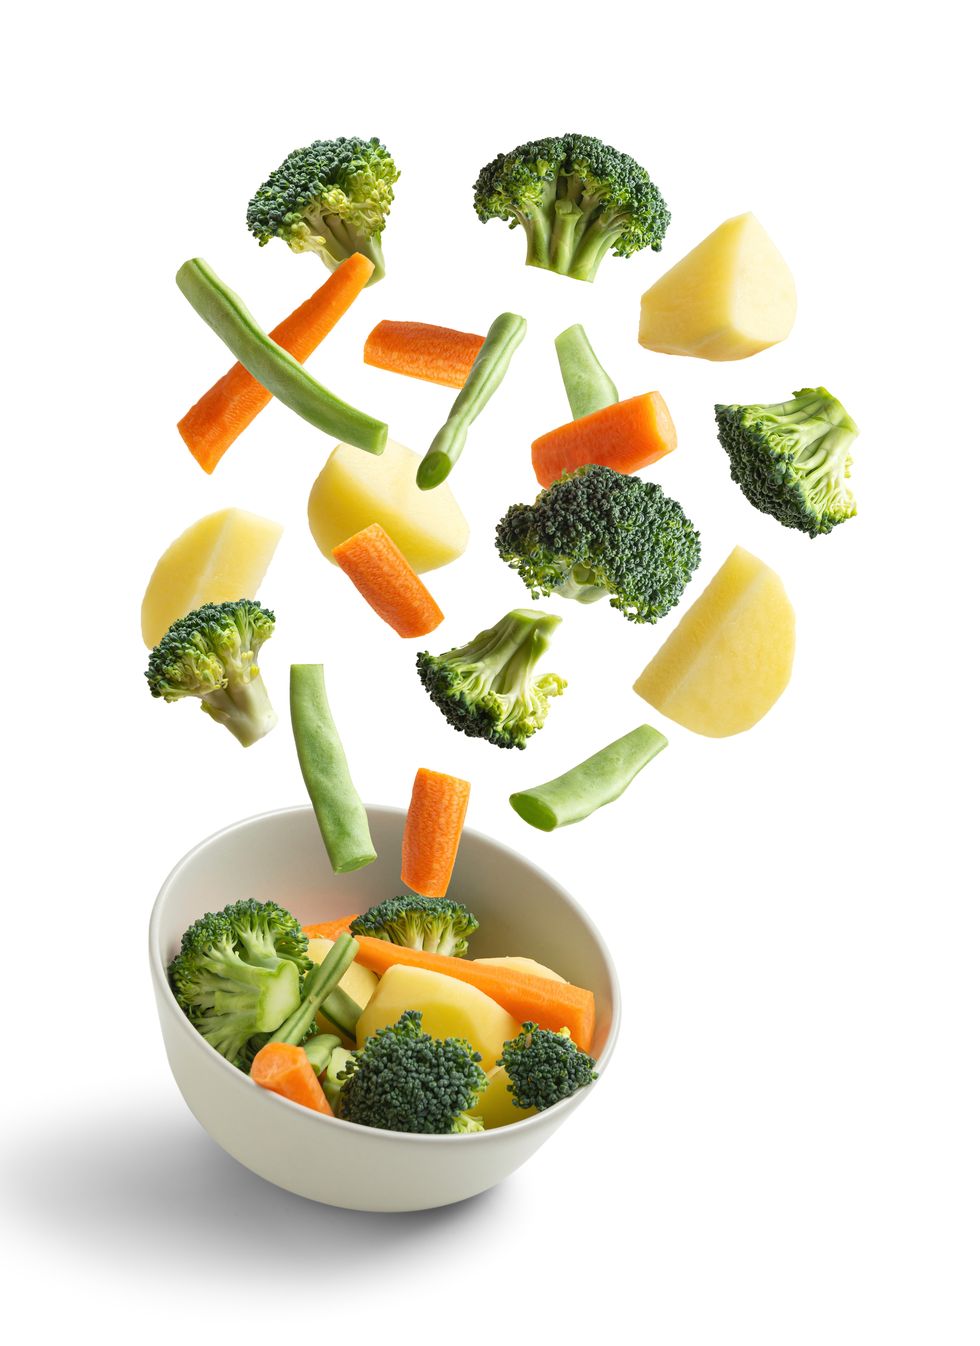 patatas, zanahoria y brócoli pueden ser una buena base para el puré de verduras del bebé